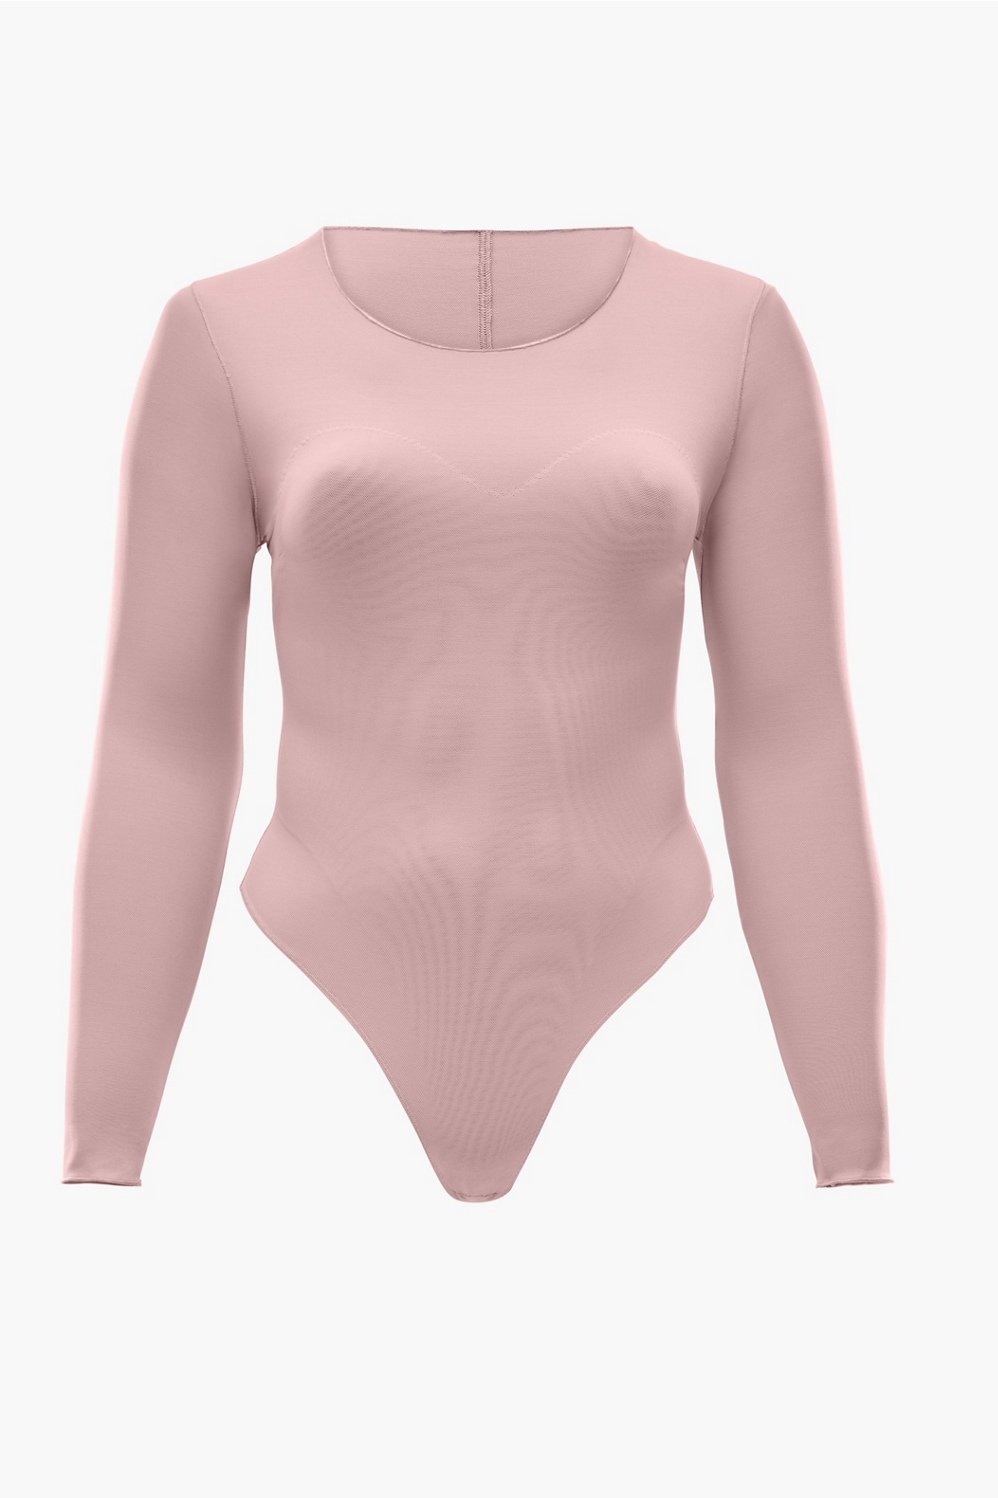 Smoothing Thong Bodysuit - Powder pink - Ladies